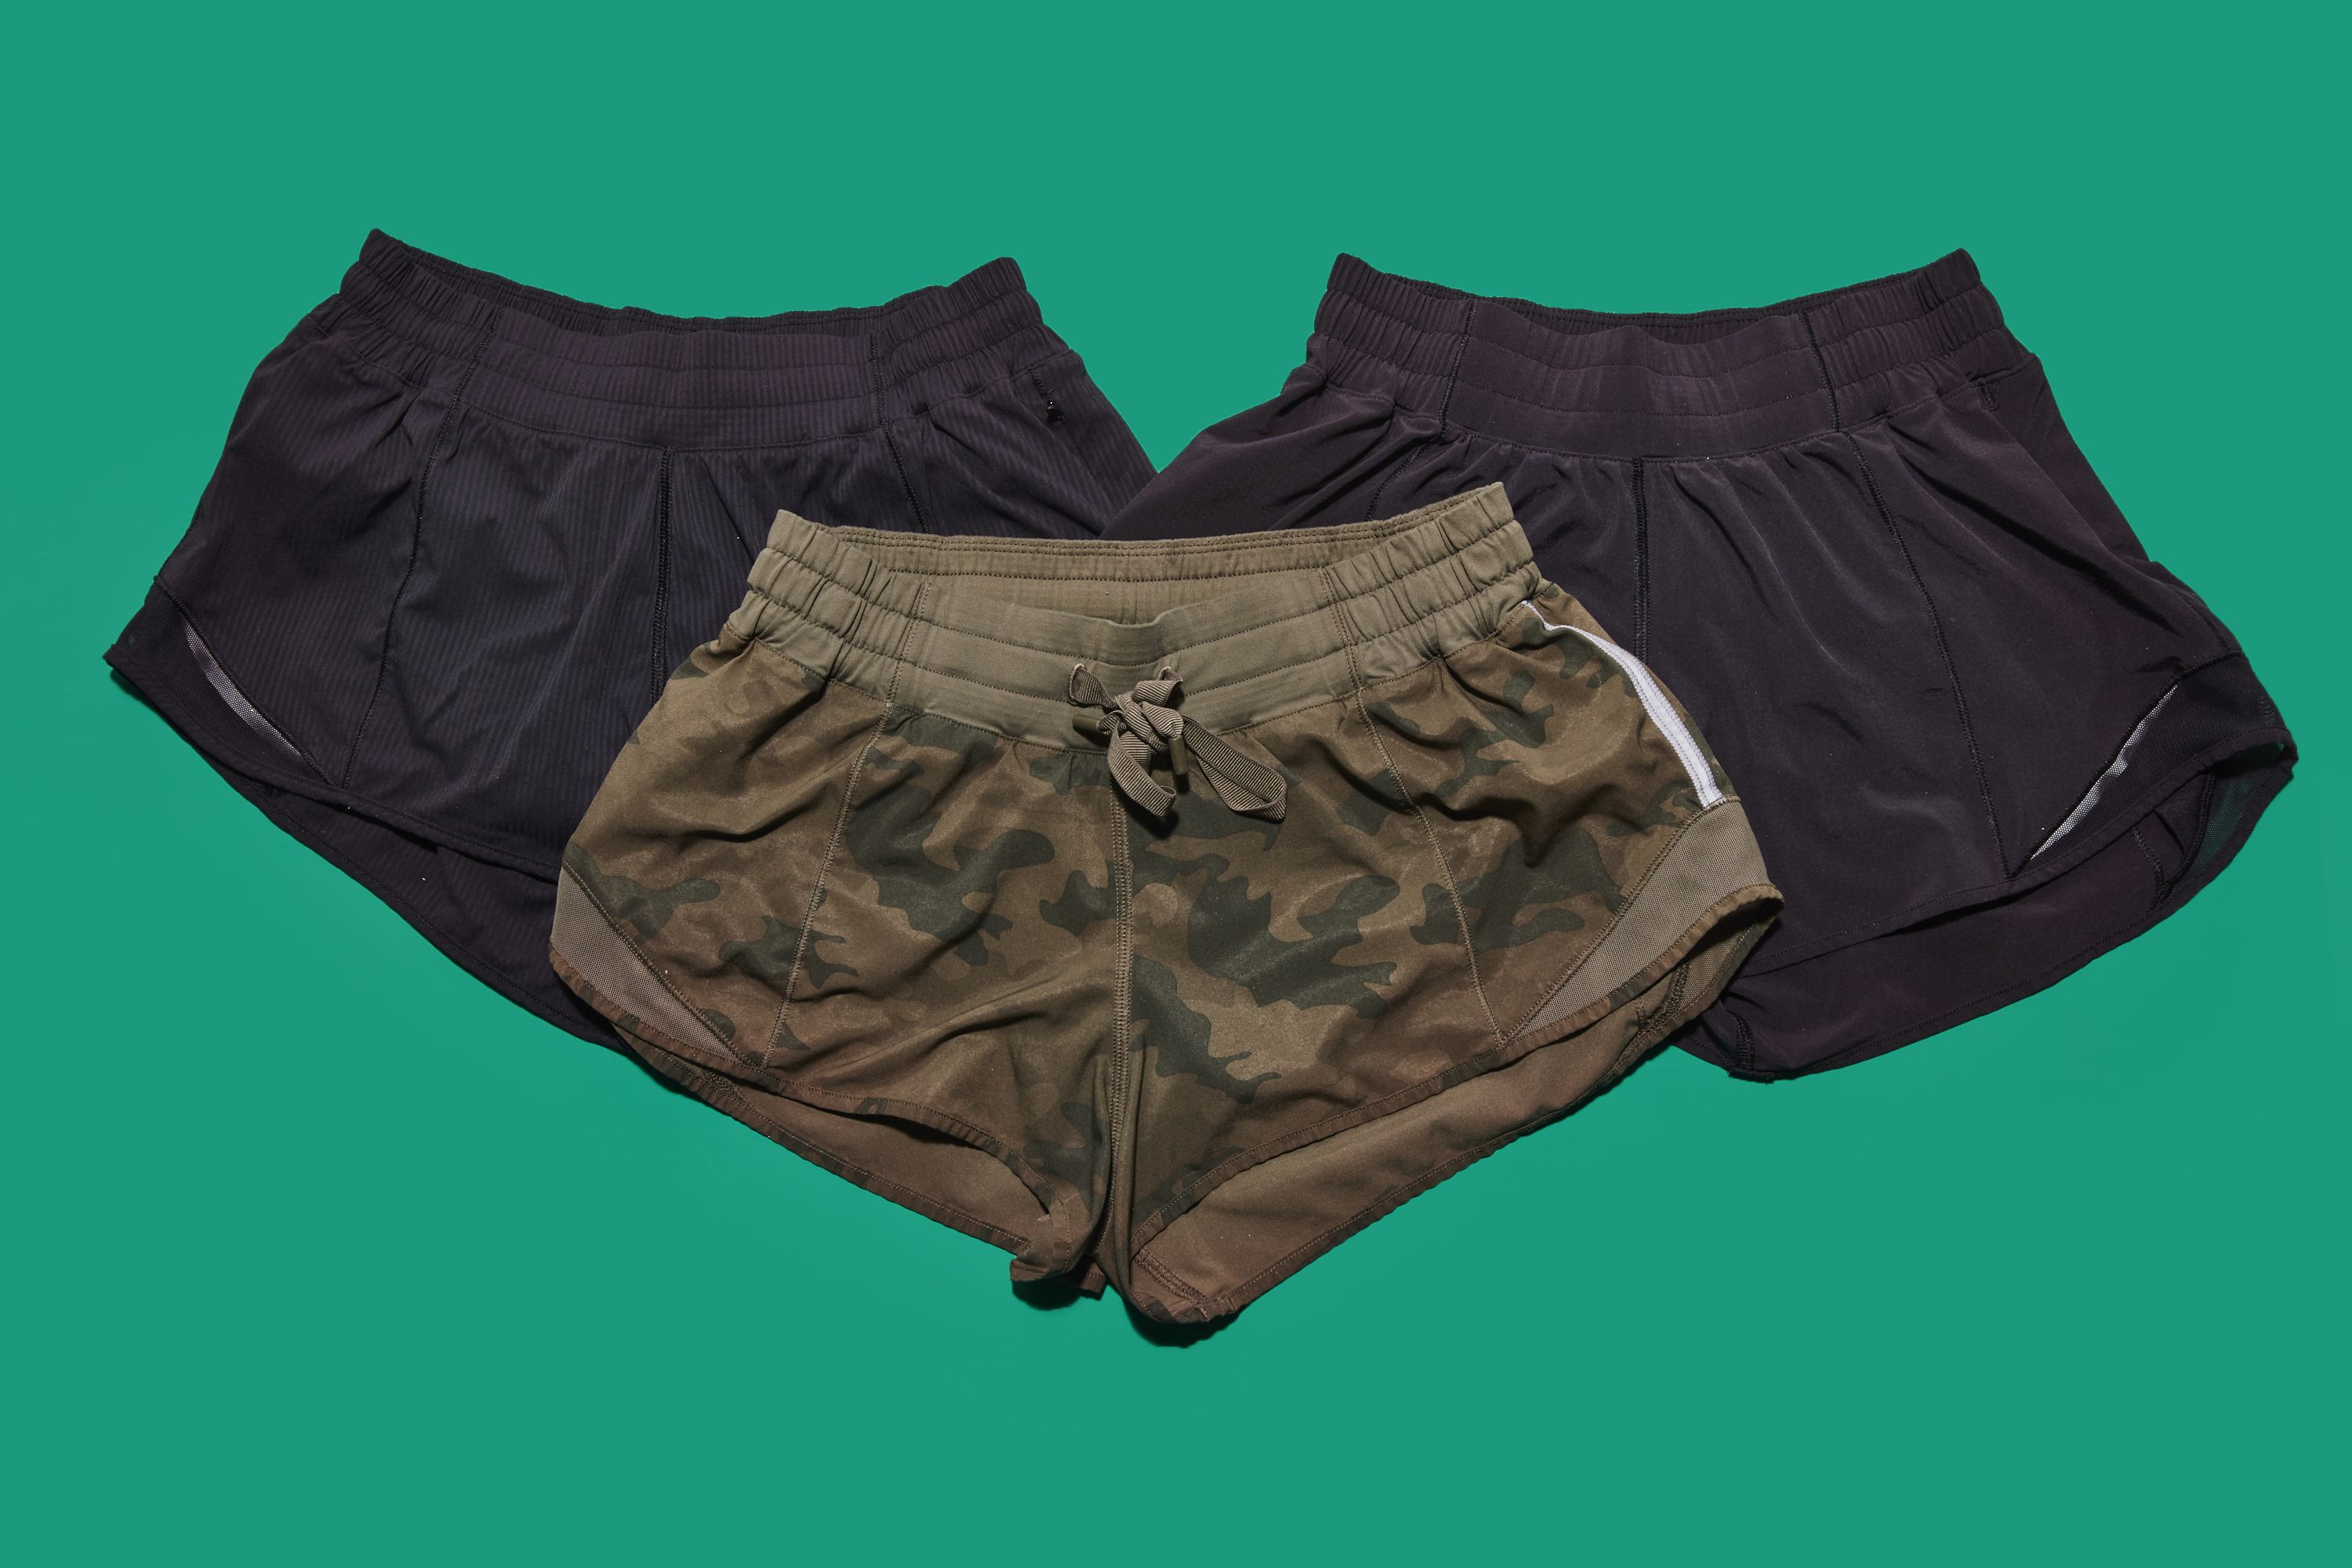 size 0 lululemon shorts